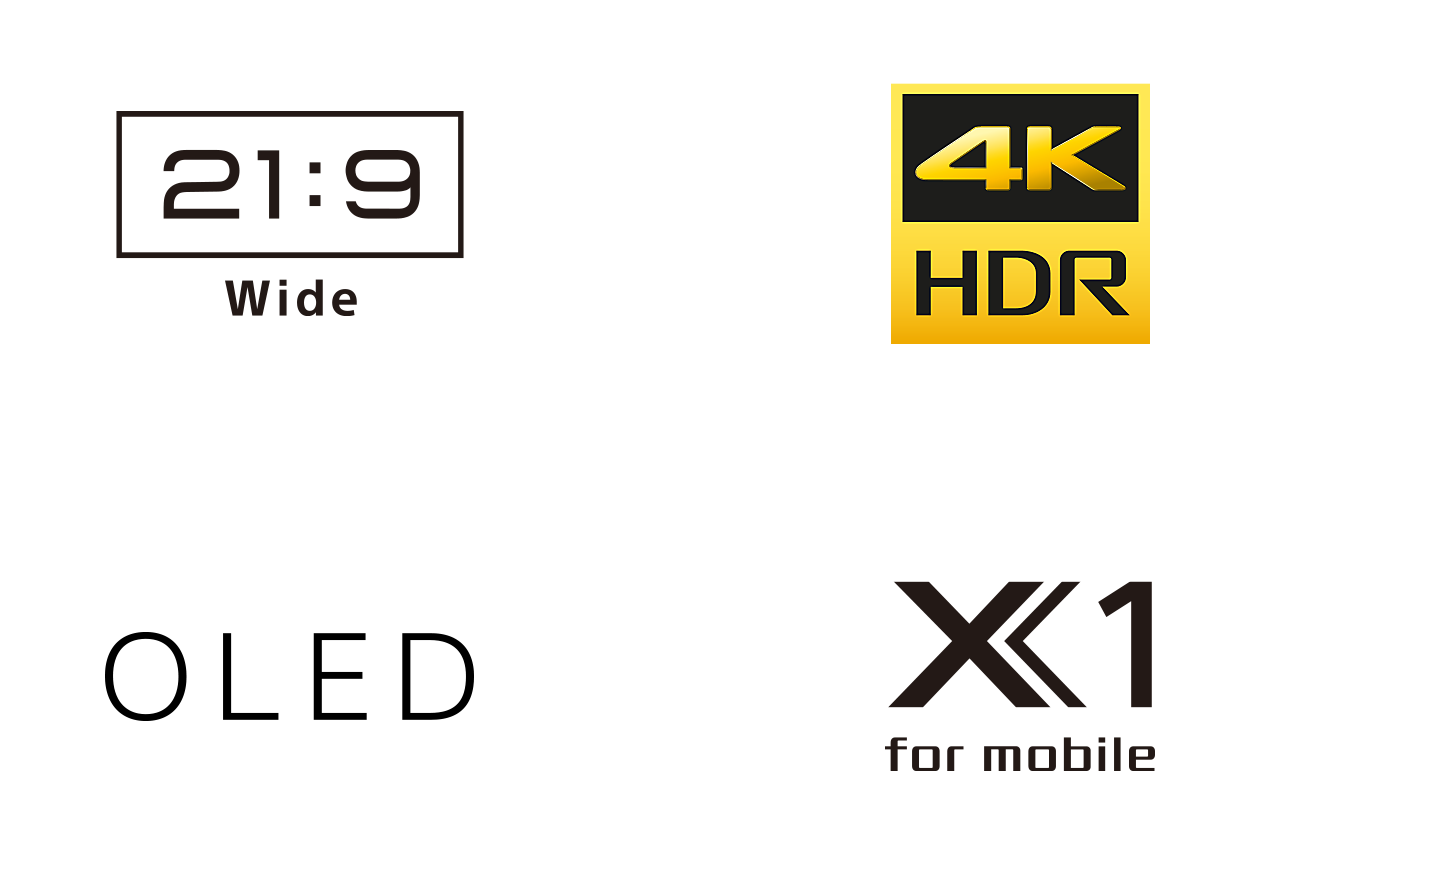 Λογότυπα για πλάτος 21:9, 4K HDR, OLED και X1 for mobile